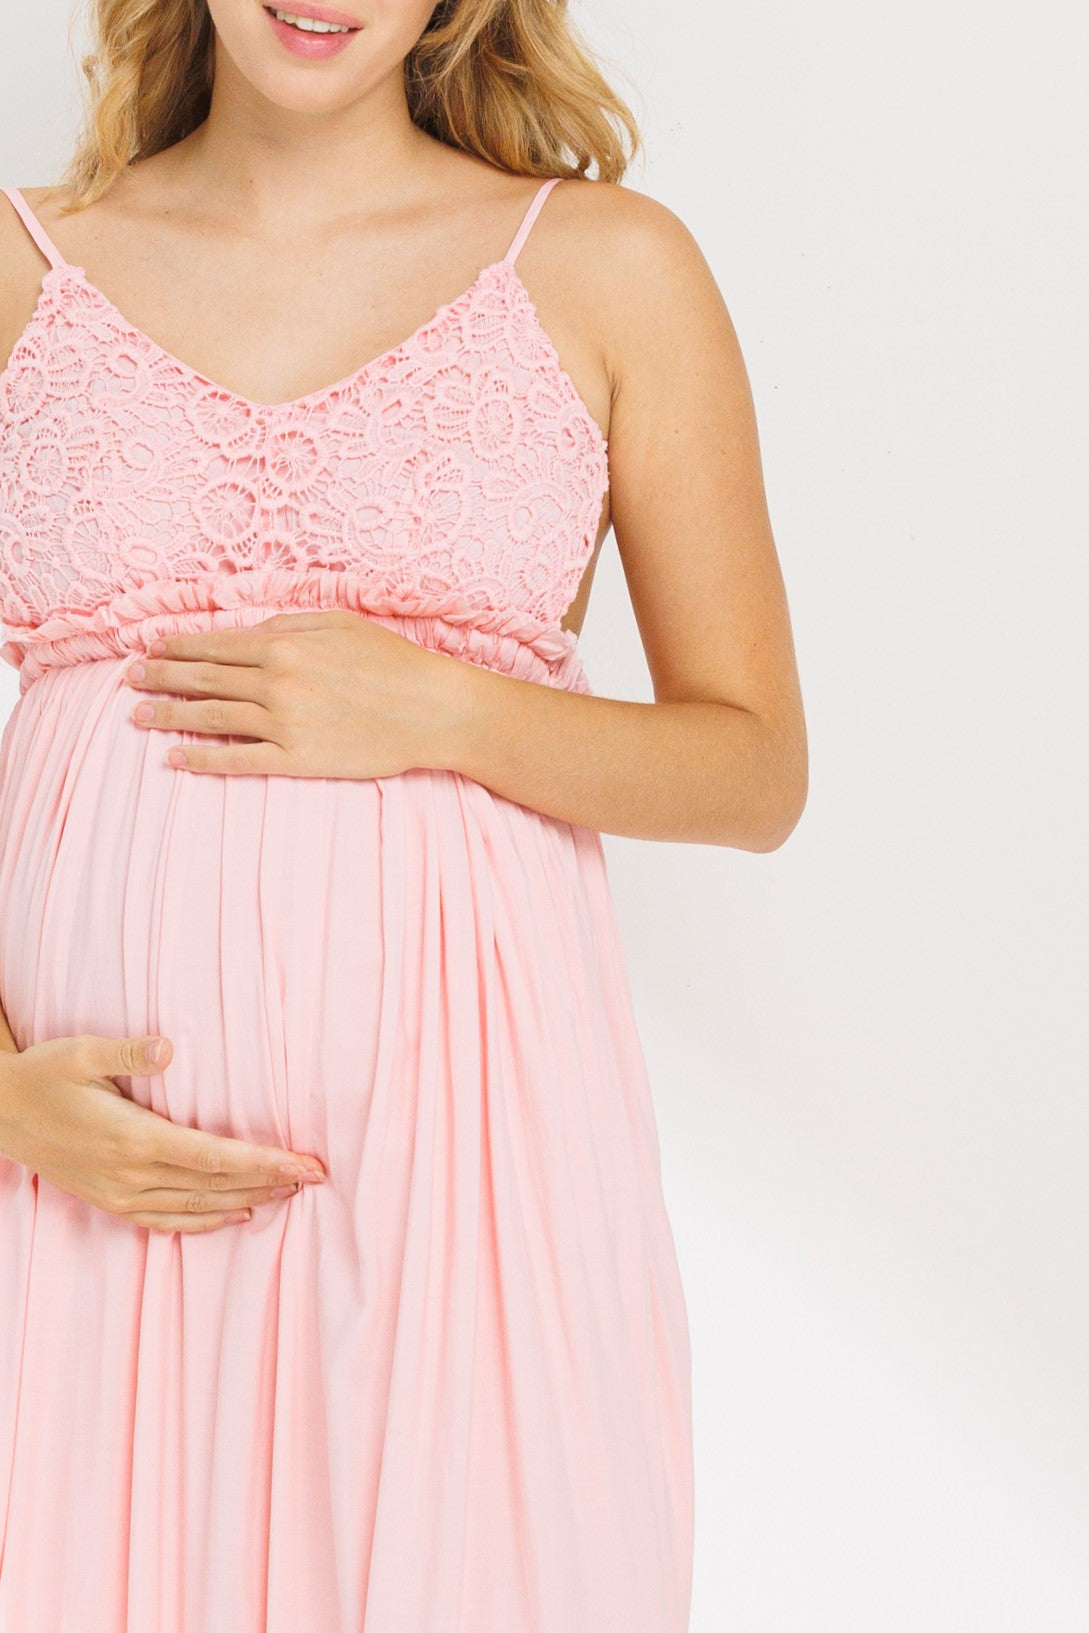 Maternity Dresses  Arianna Crochet Upper Body Open Back Dress